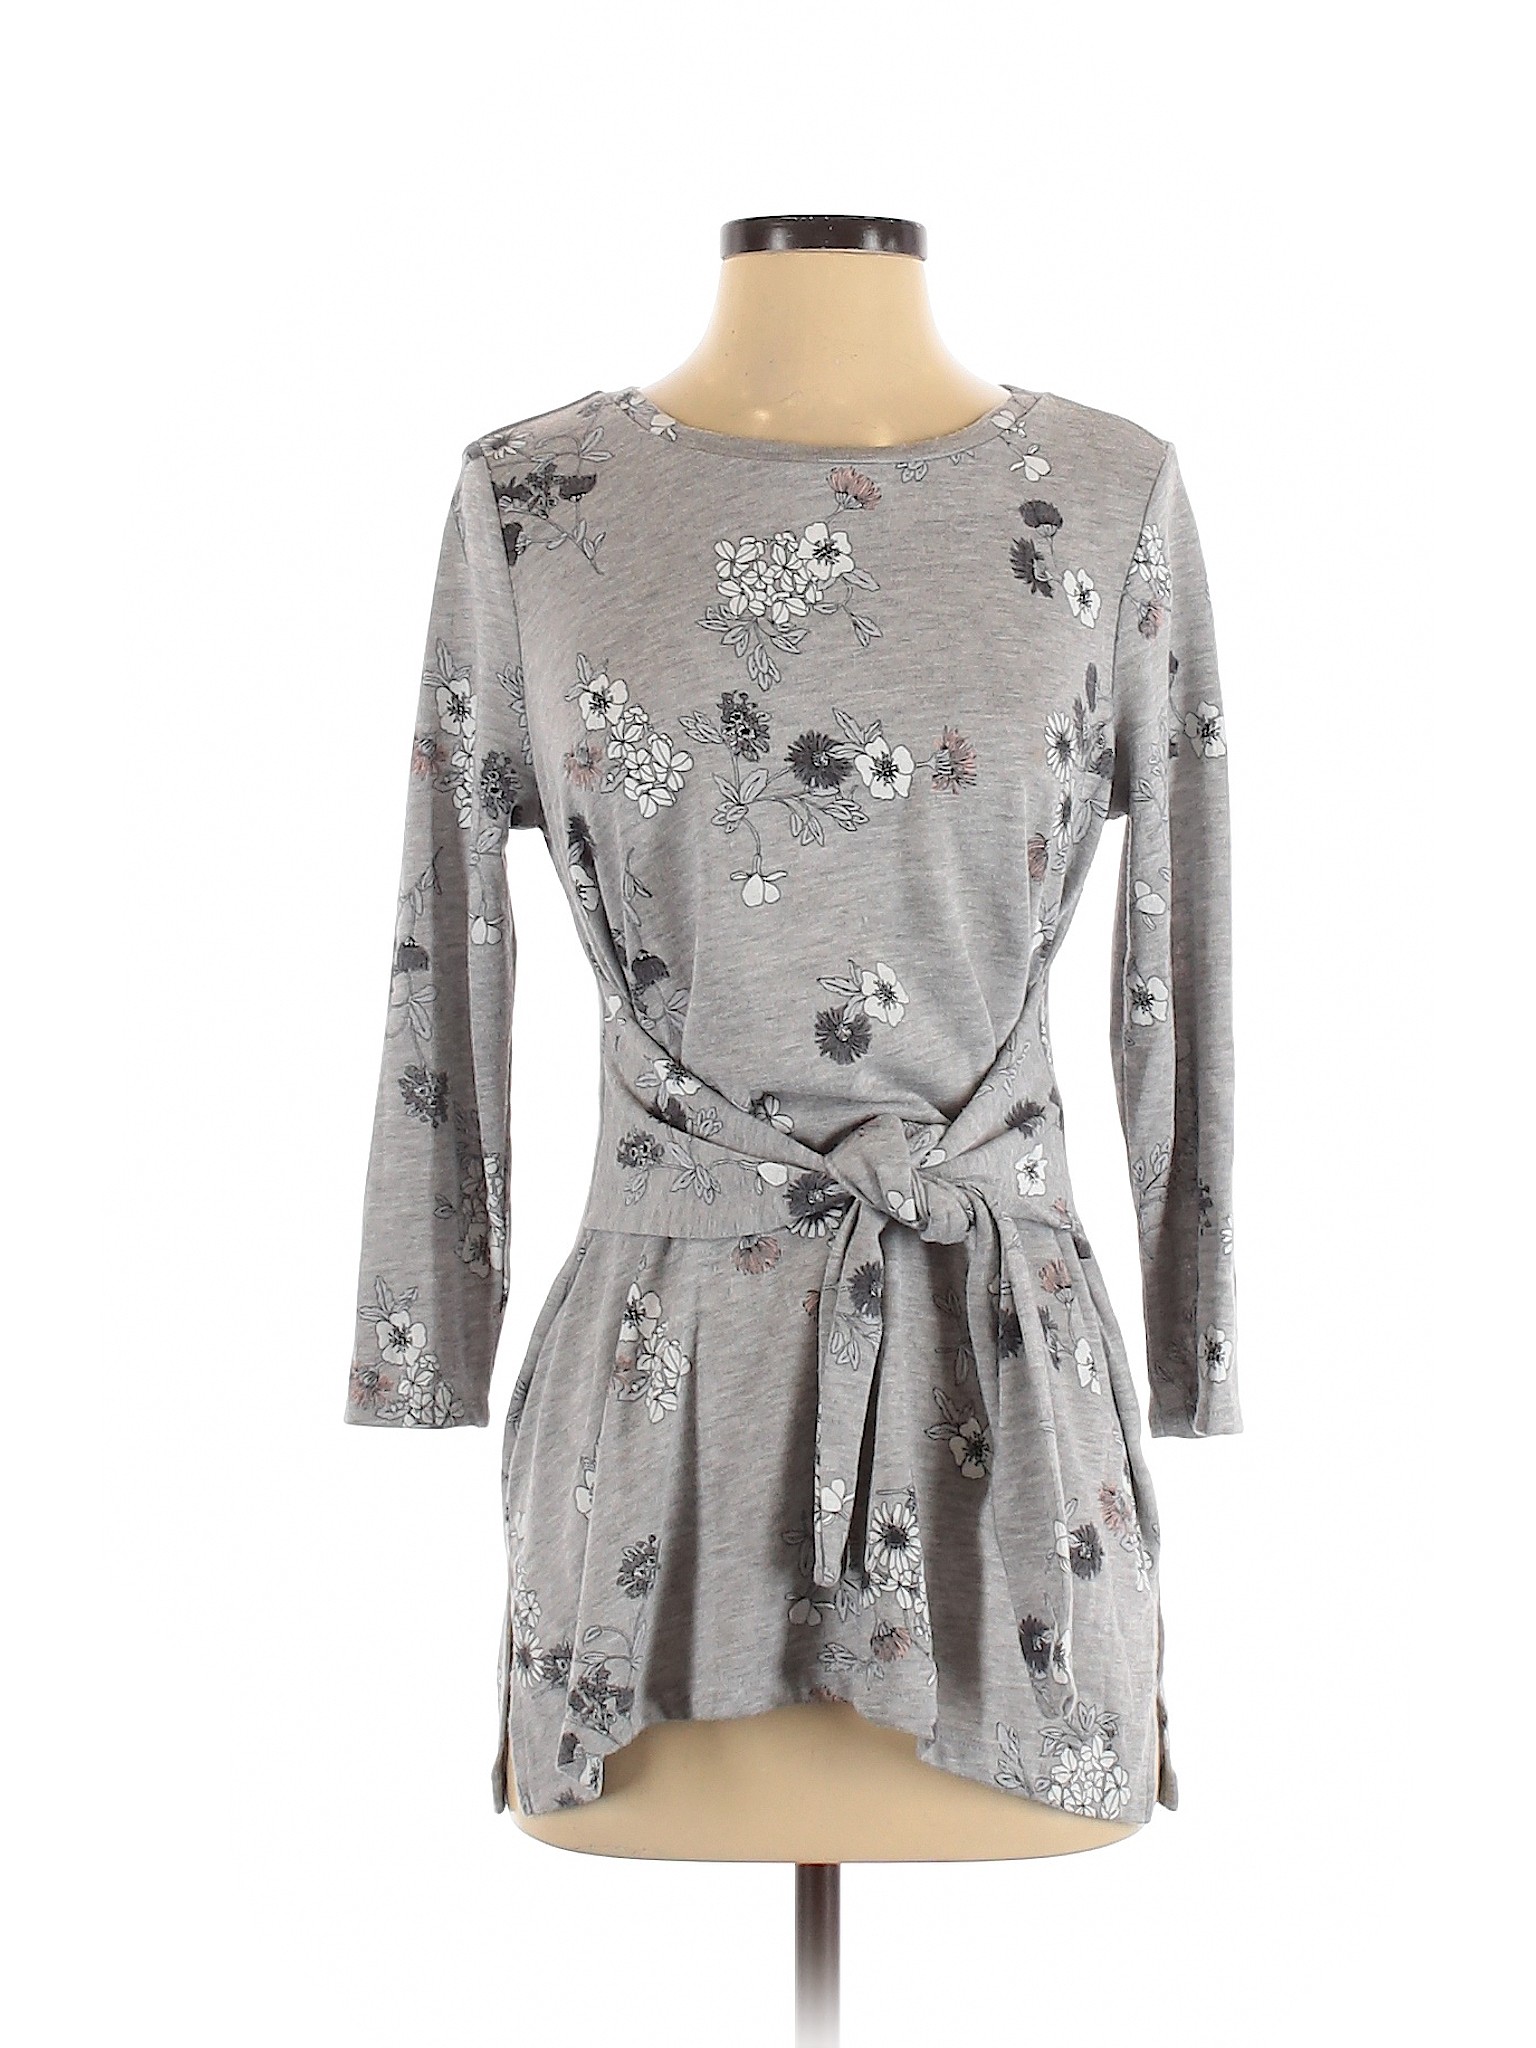 Liz Claiborne Women Gray Casual Dress S | eBay